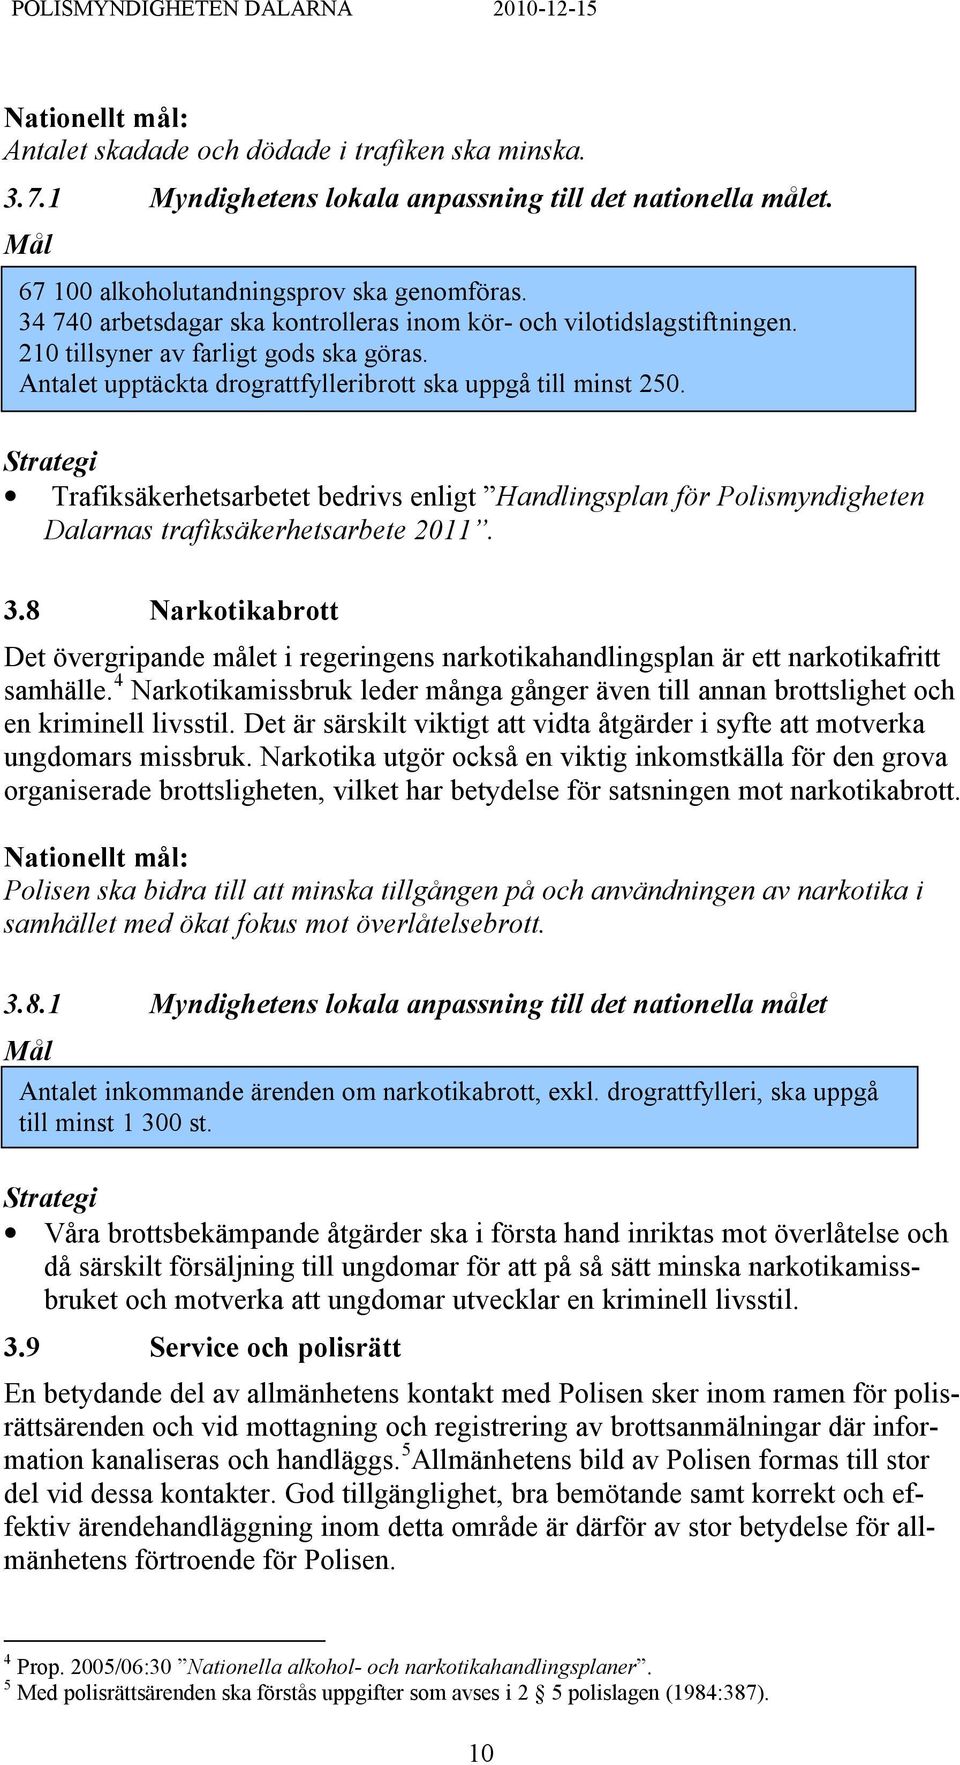 Trafiksäkerhetsarbetet bedrivs enligt Handlingsplan för Polismyndigheten Dalarnas trafiksäkerhetsarbete 2011. 3.